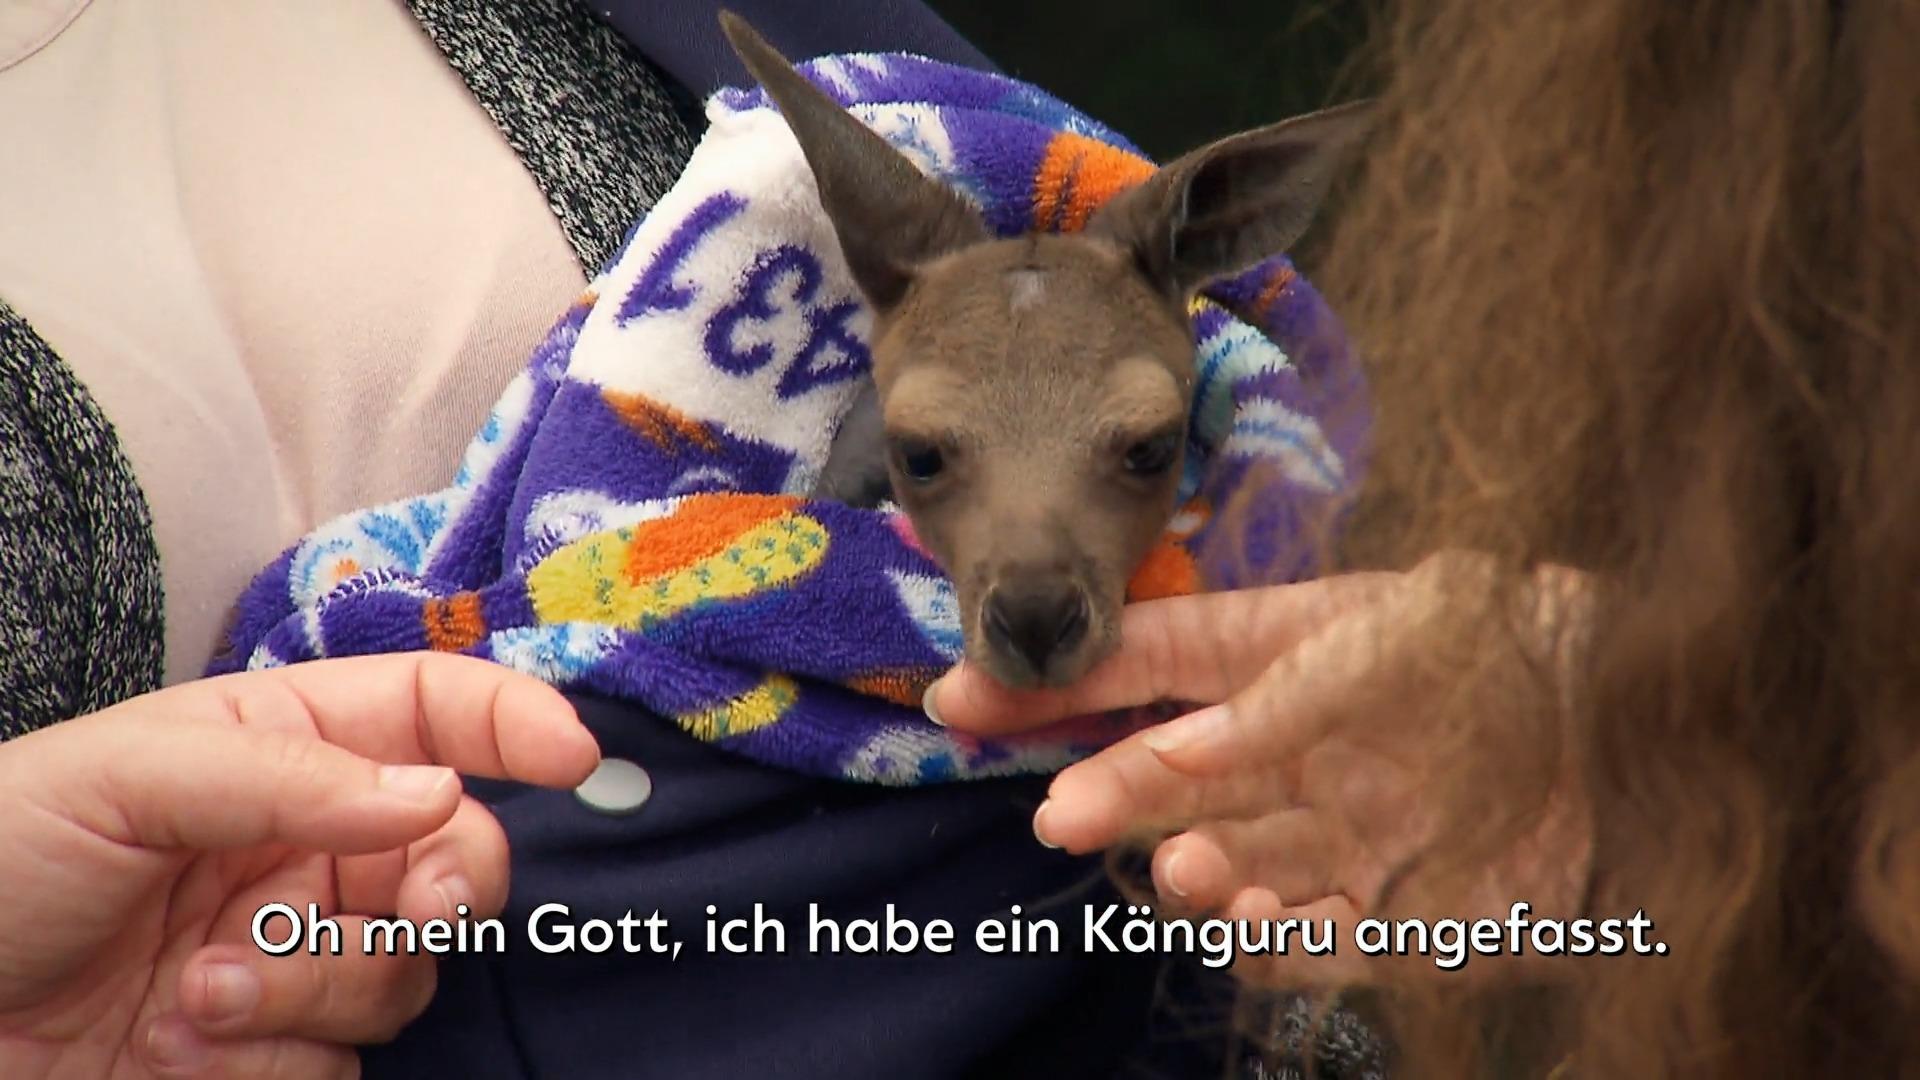 Wie süüüß! Baby-Känguru-Alarm bei Farmer Tom Niedliche Überraschung in Australien